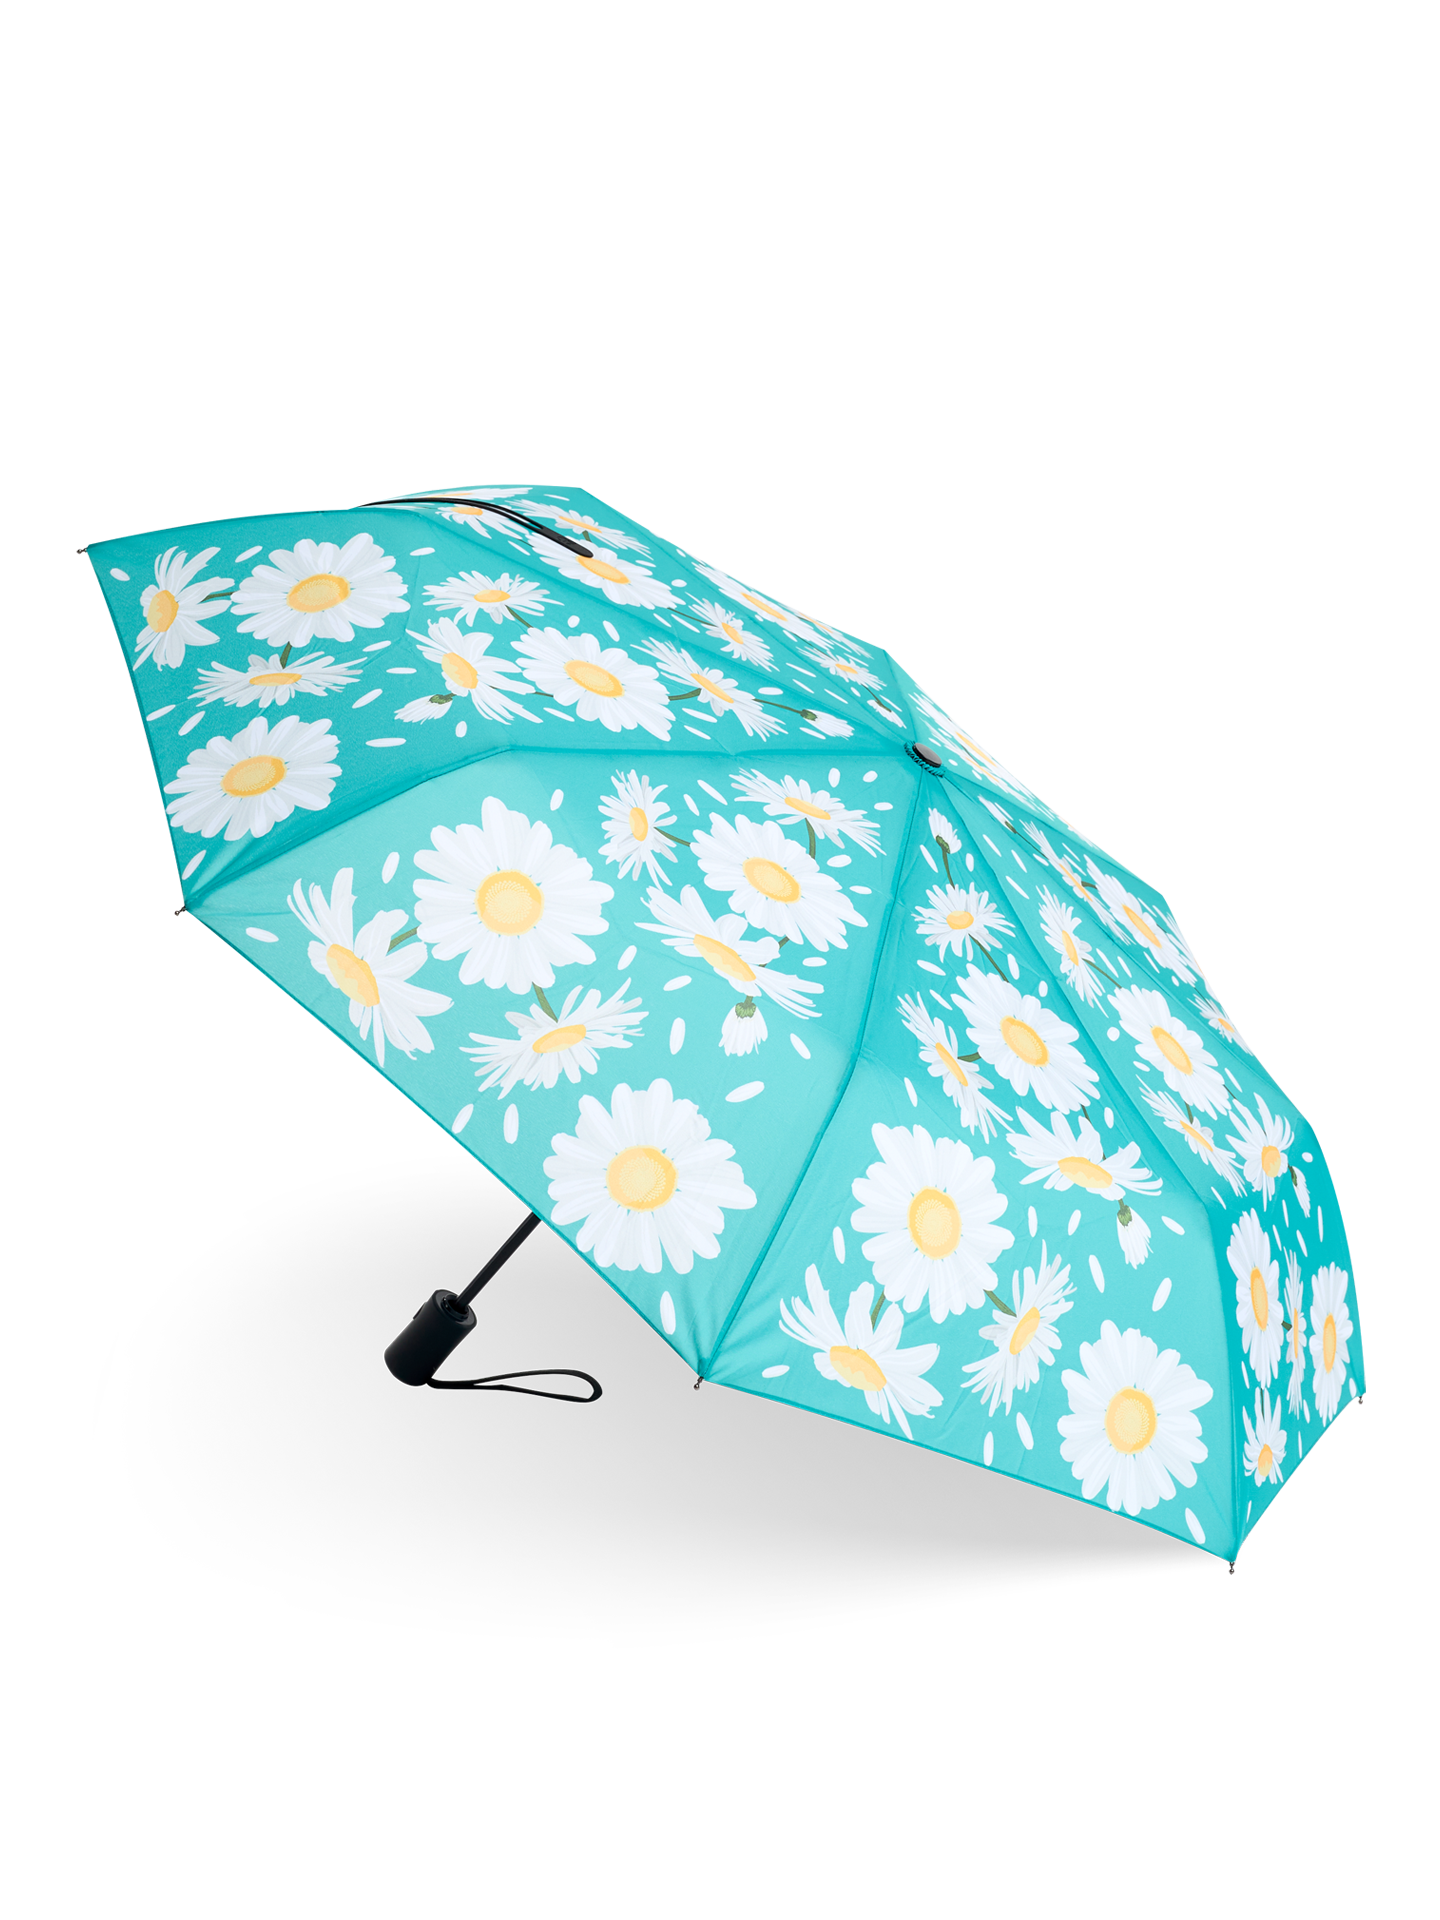 Umbrella Summer Daisy